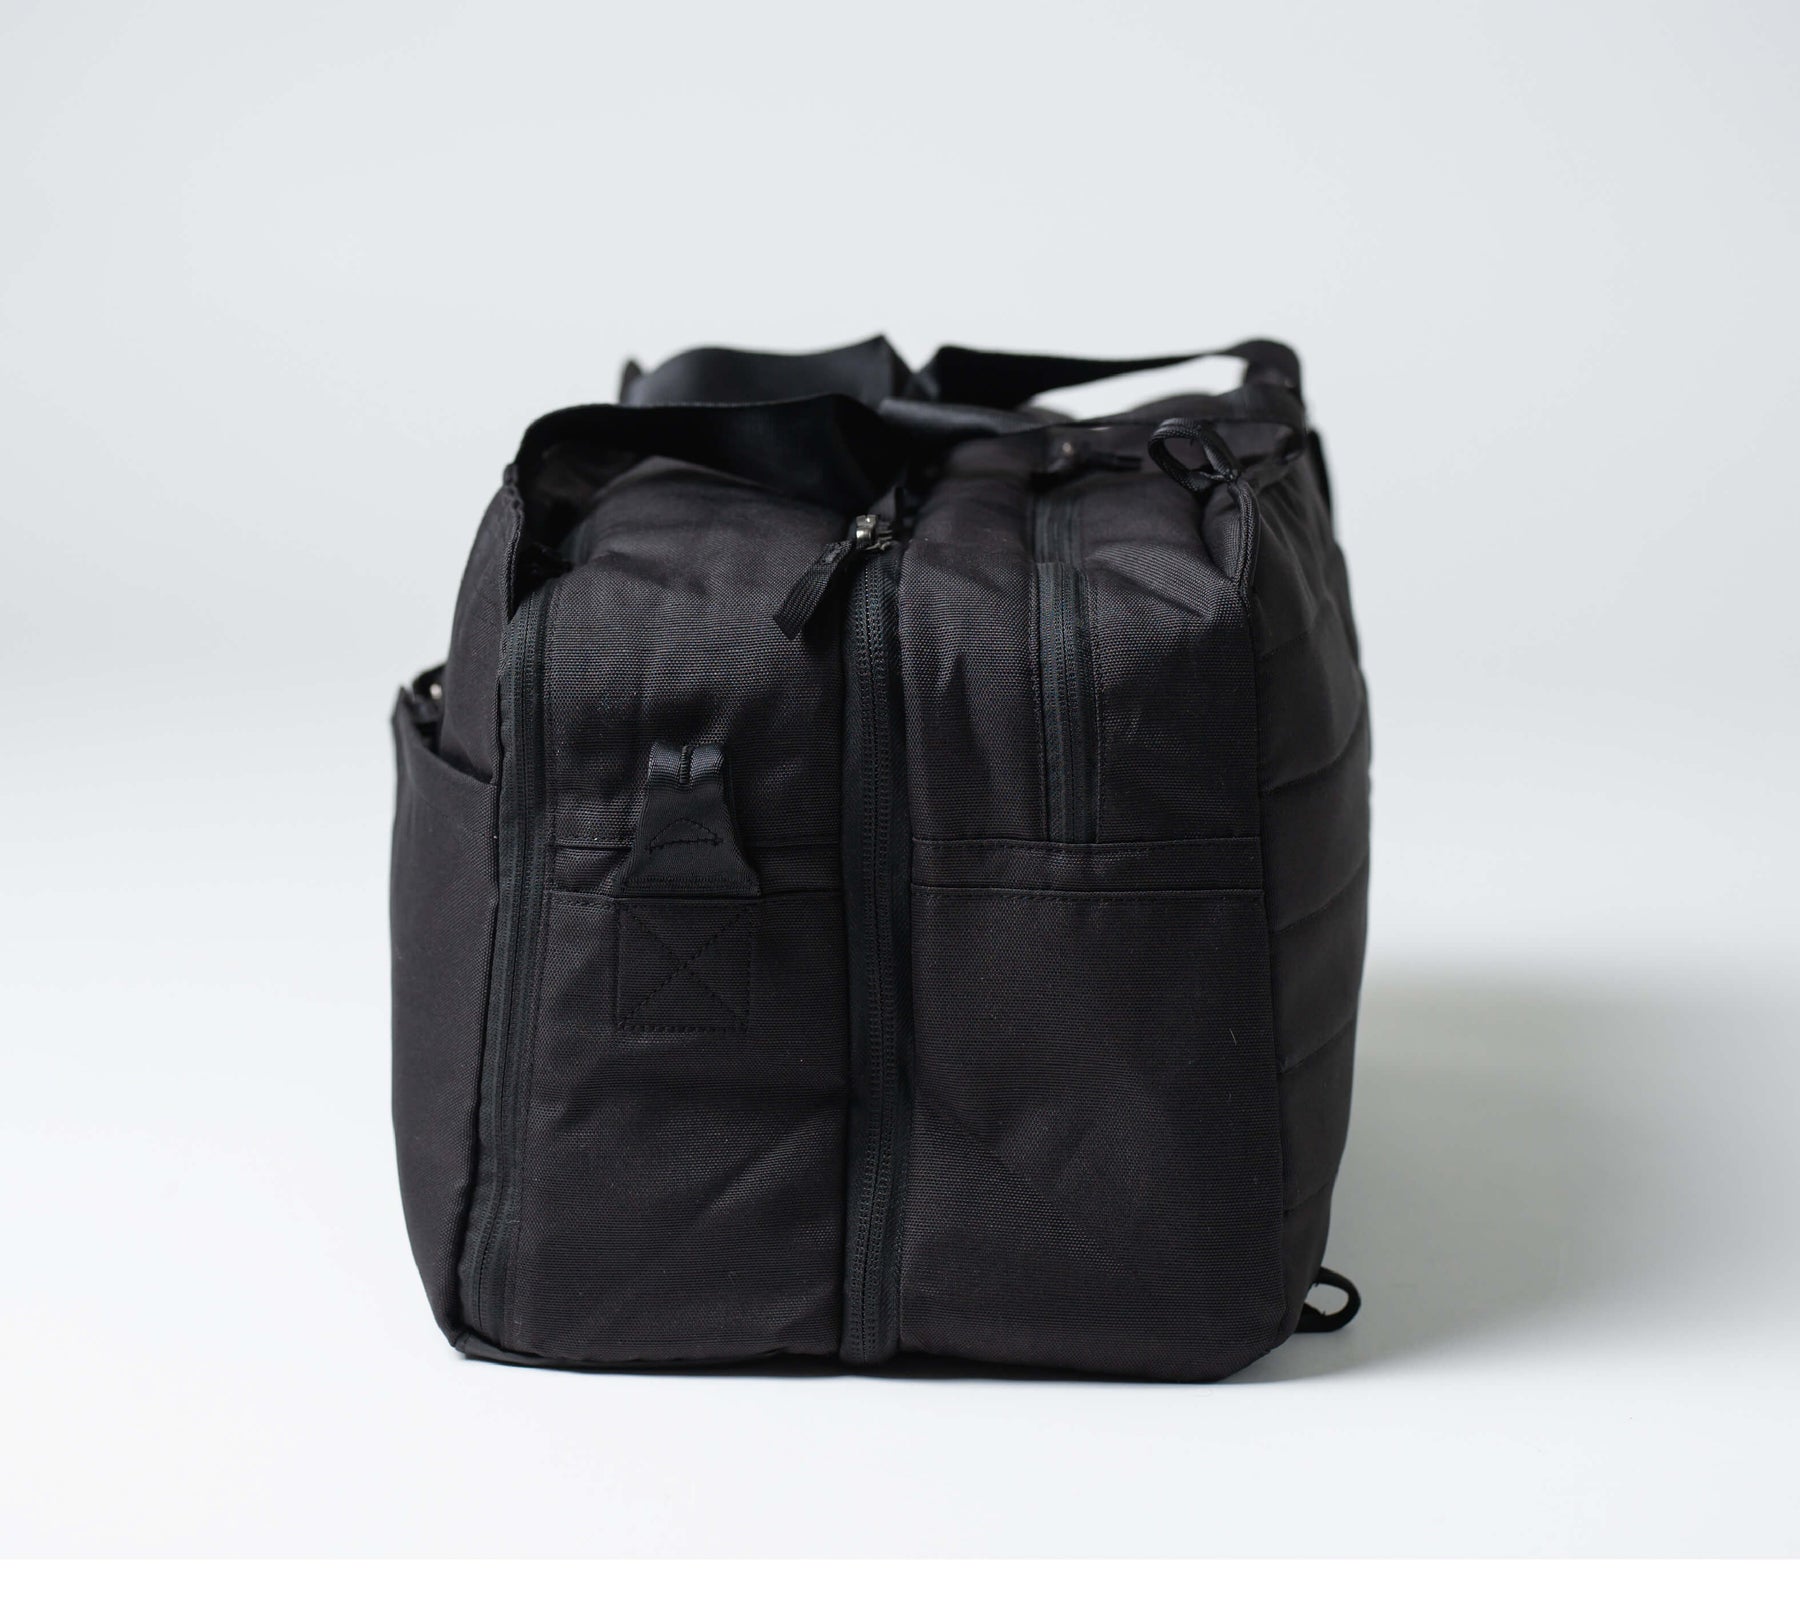 Professoinal Unisex Leatherette Office Laptop Bag